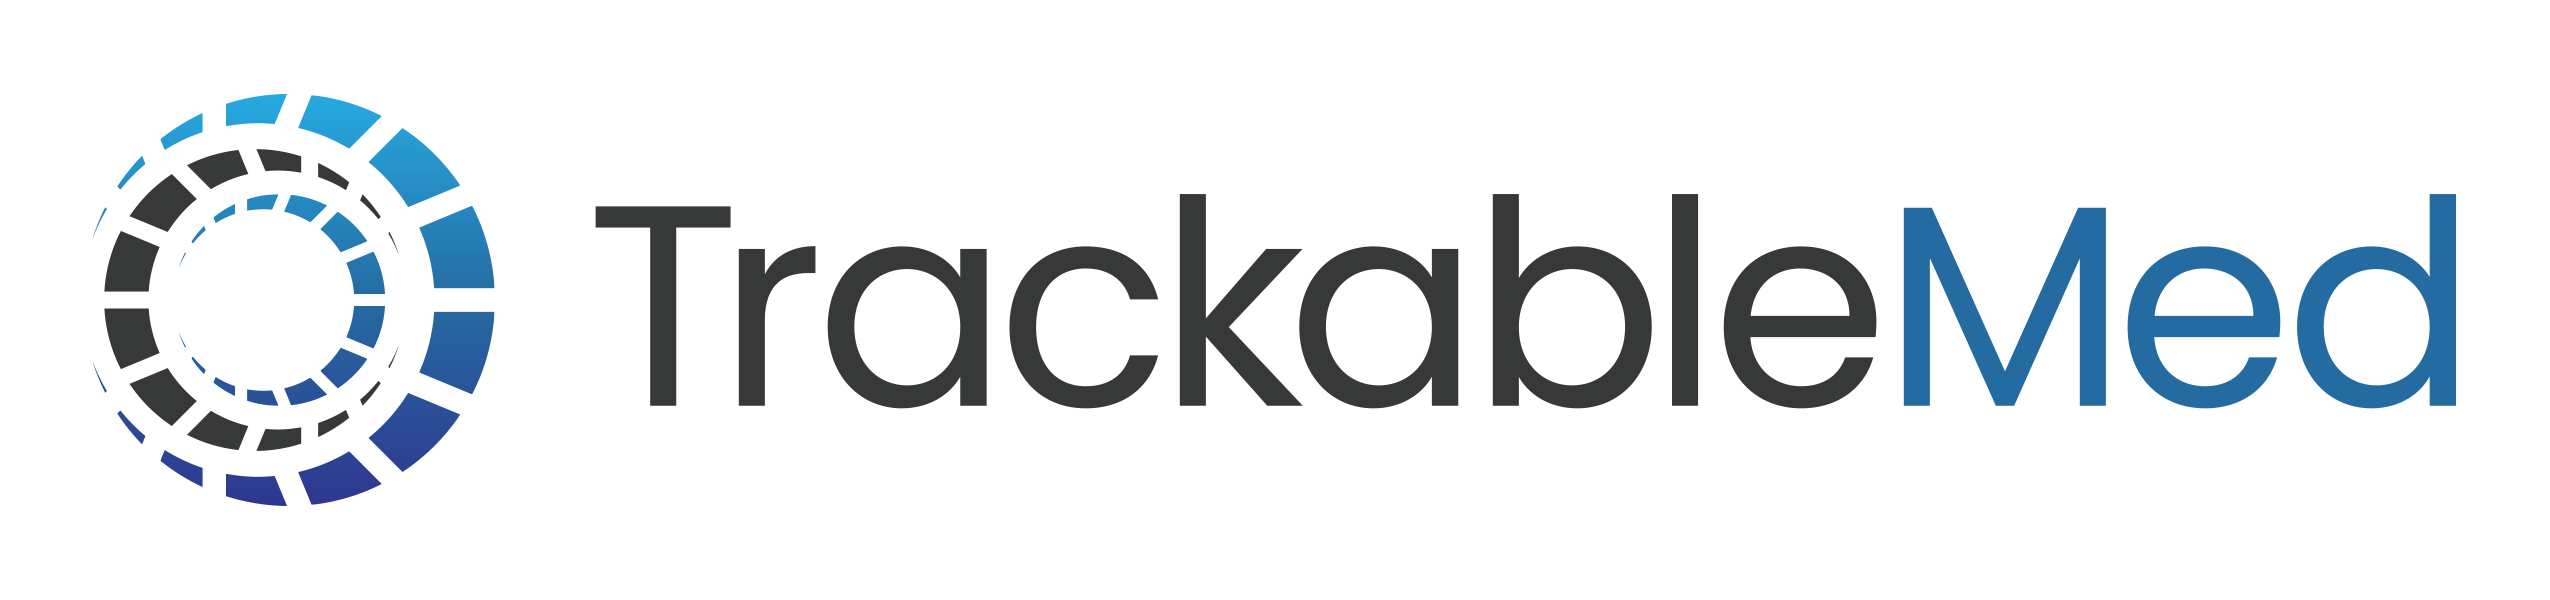 TrackableMed logo